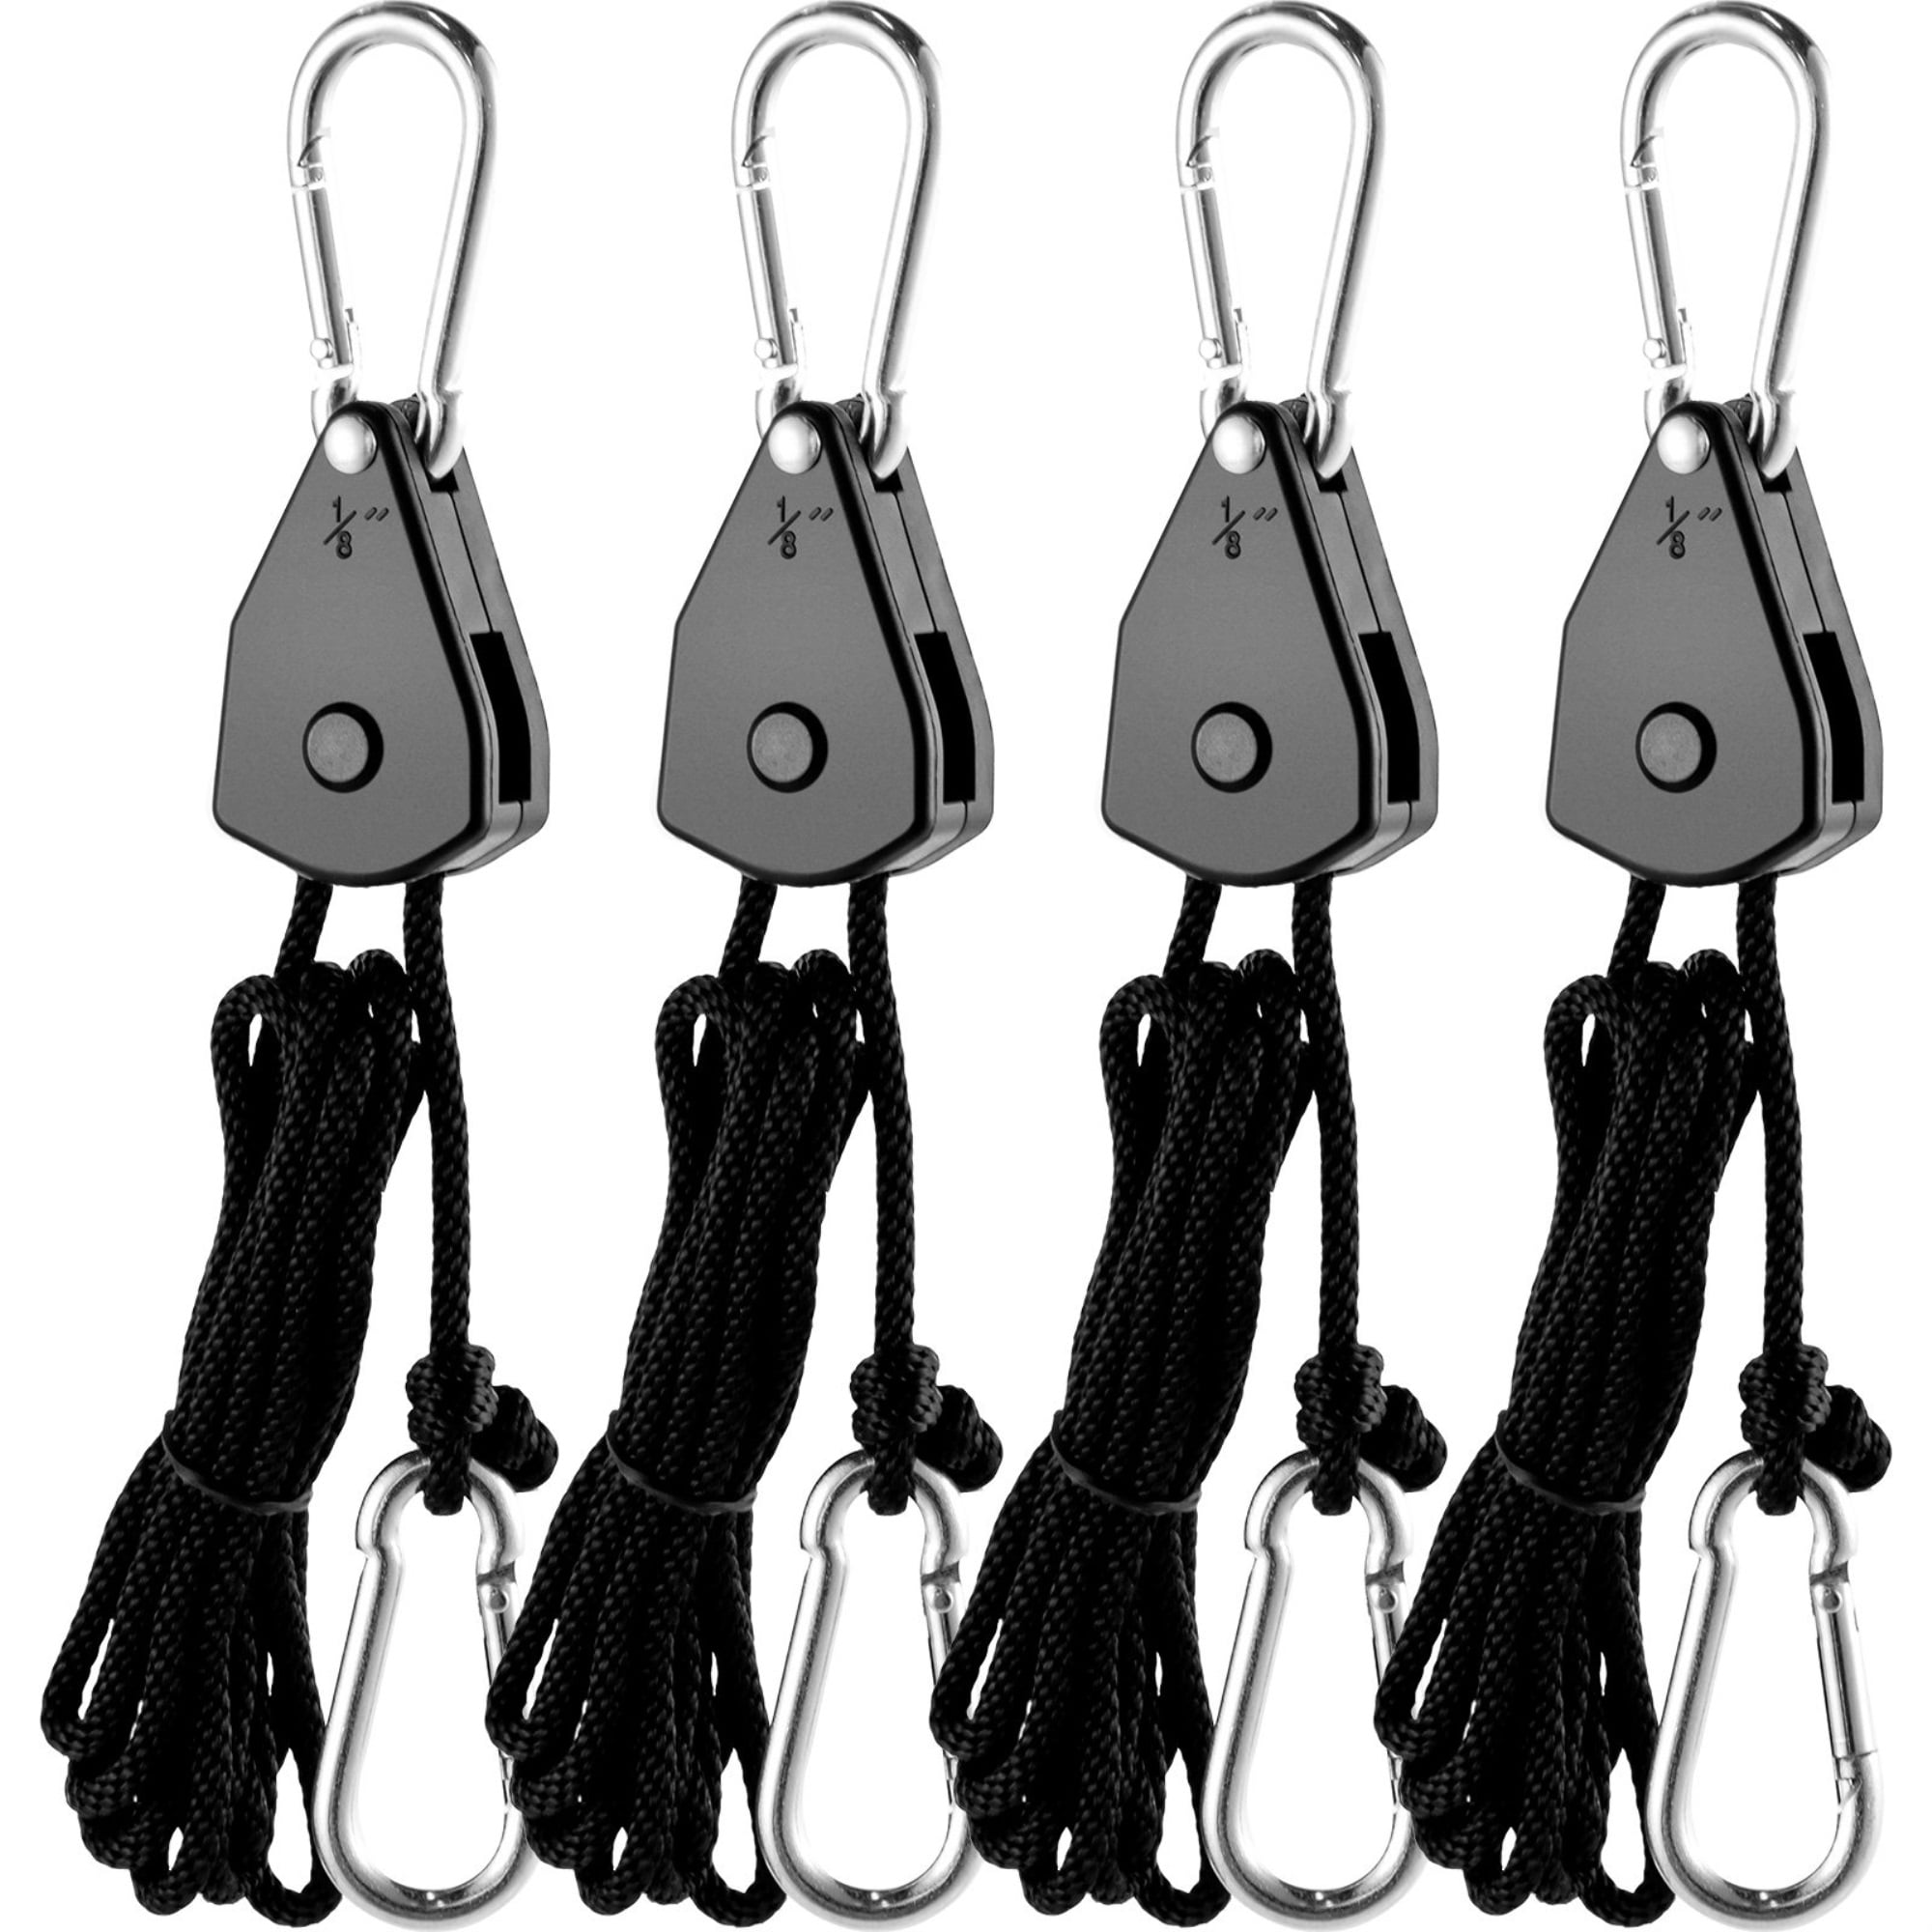 easily adjustable rope Clip Hanger carabiner, Ratchet hanger tie down 10 PACK 